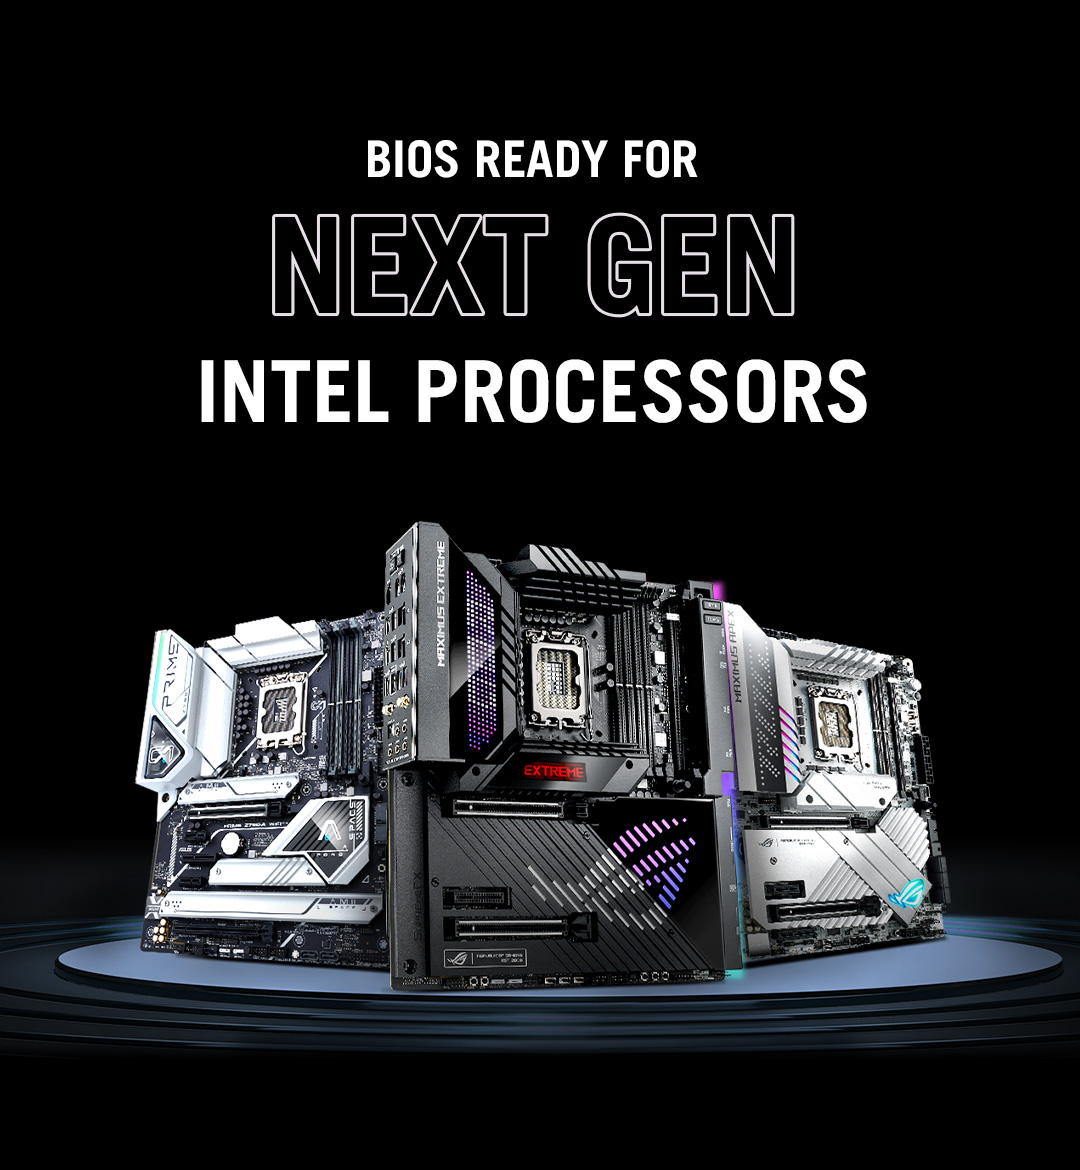 Drei Z790-Mainboards mit BIOS Ready für Intel-Prozessoren der 14. Generation